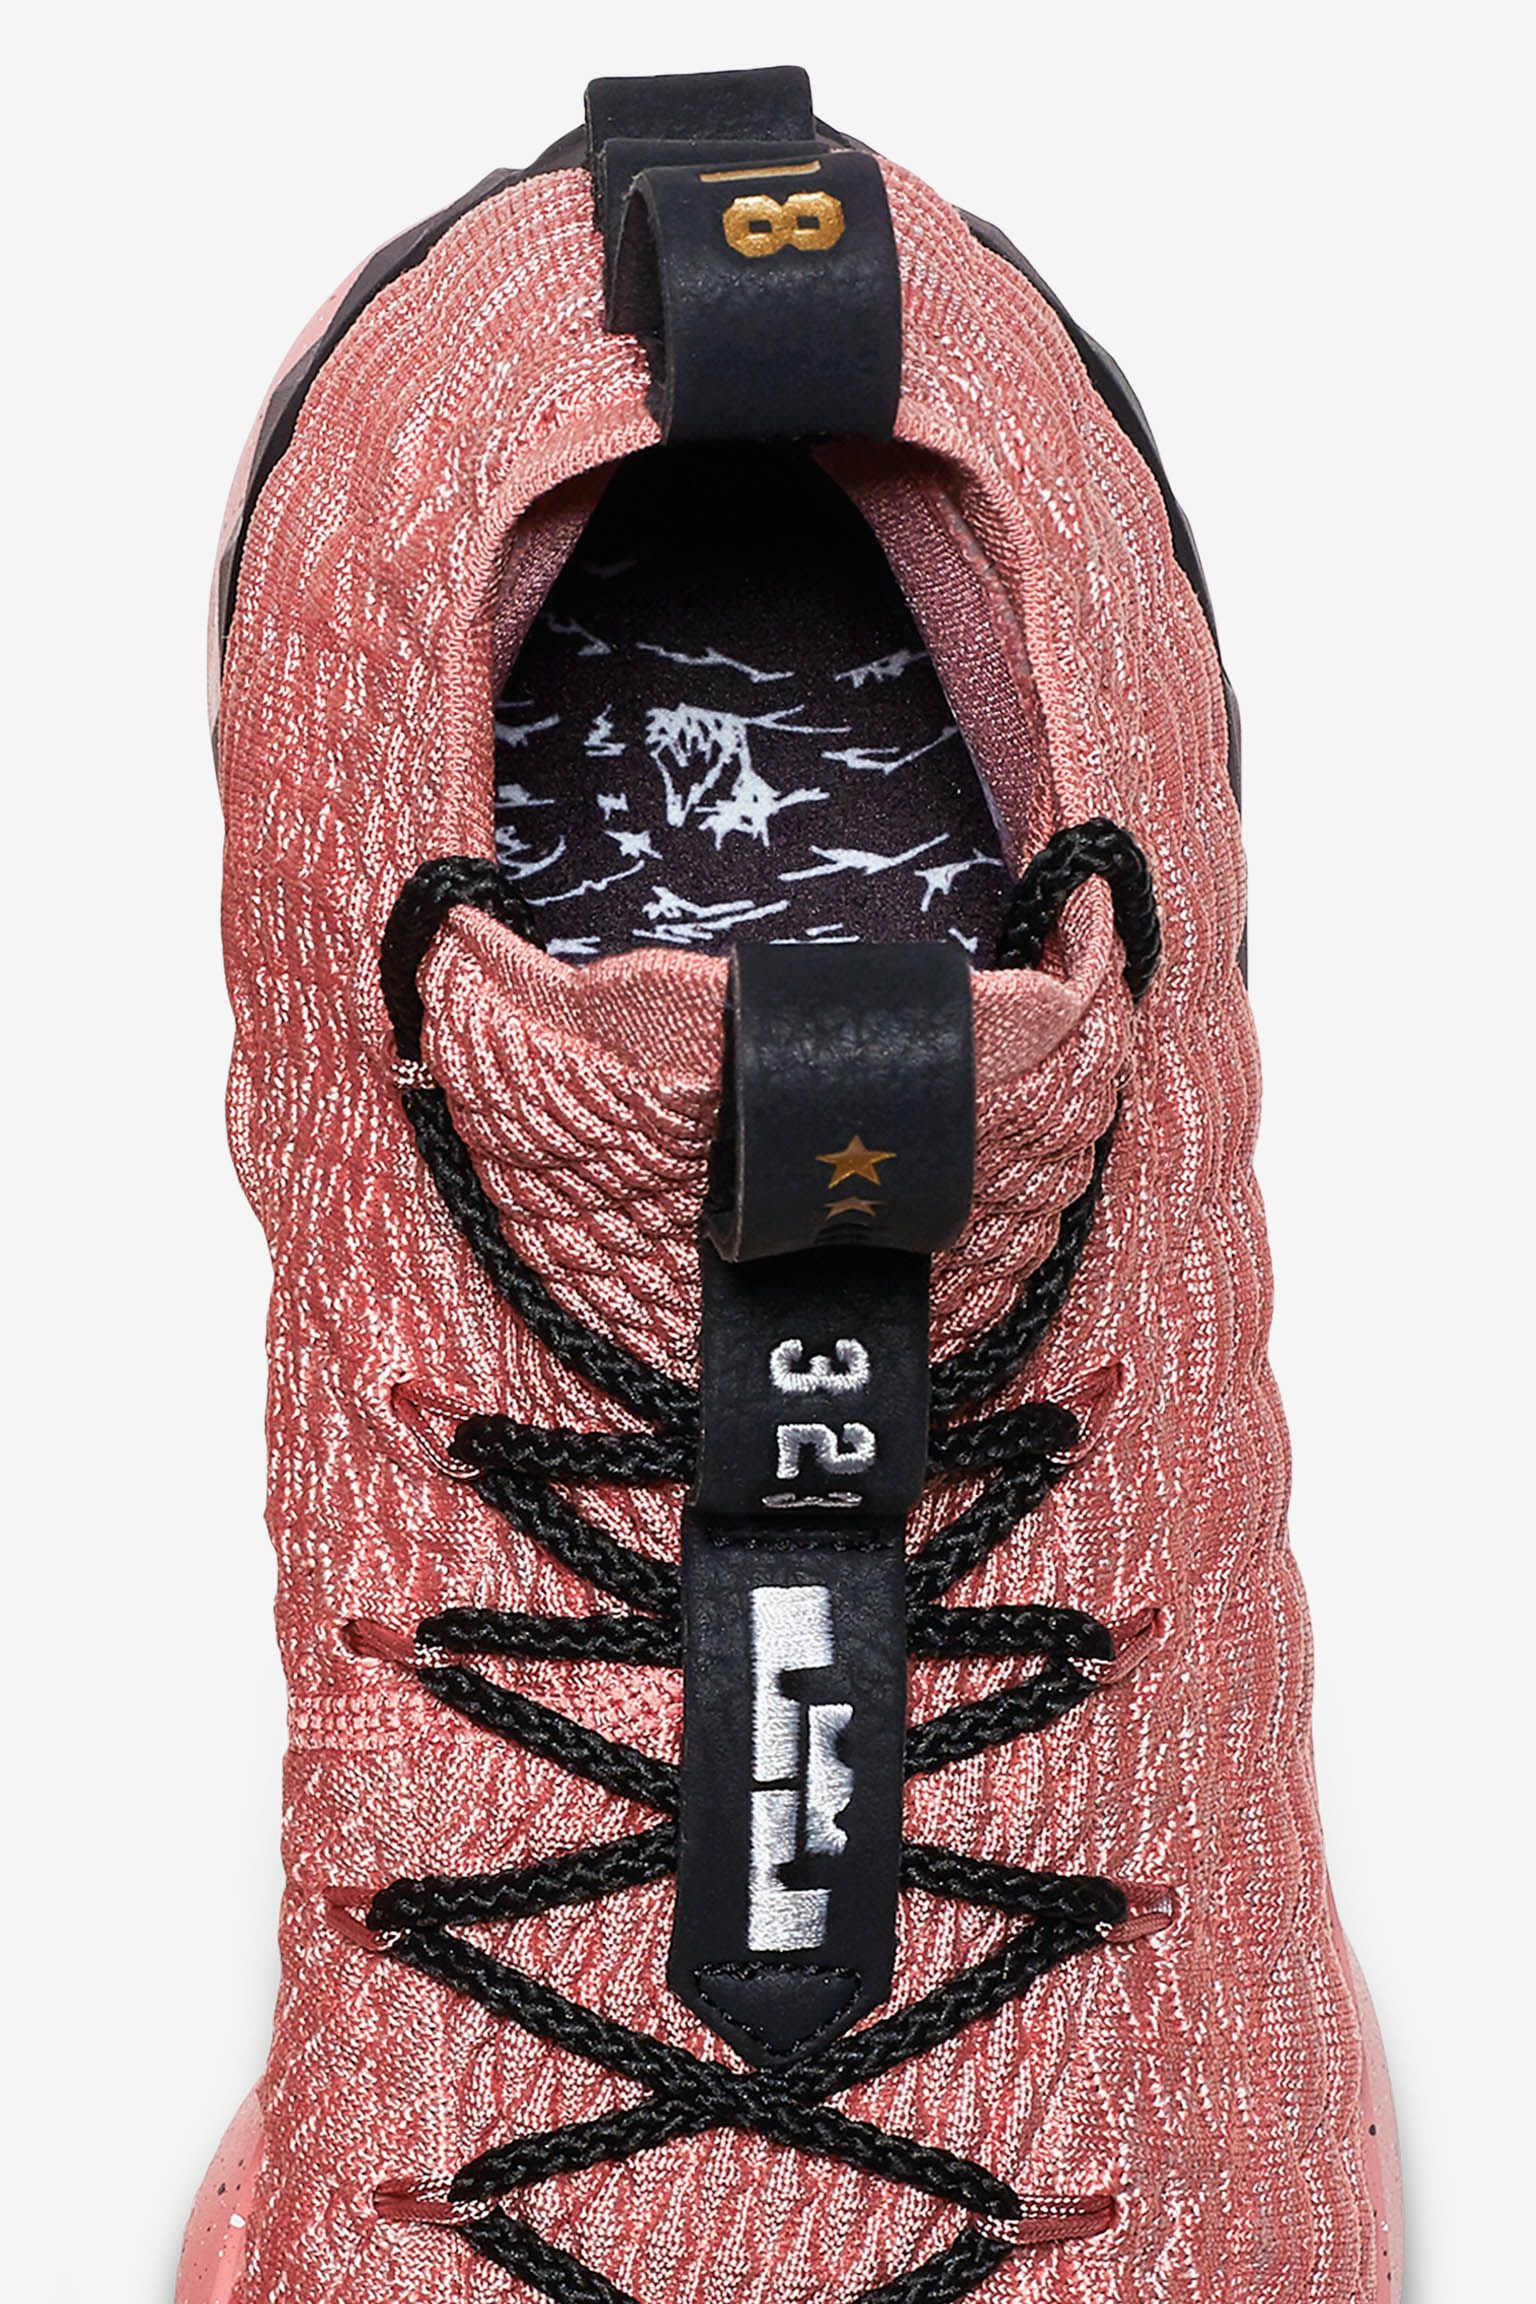 Nike Lebron 15 'Rust Pink & Metallic Gold' Release Date. Nike